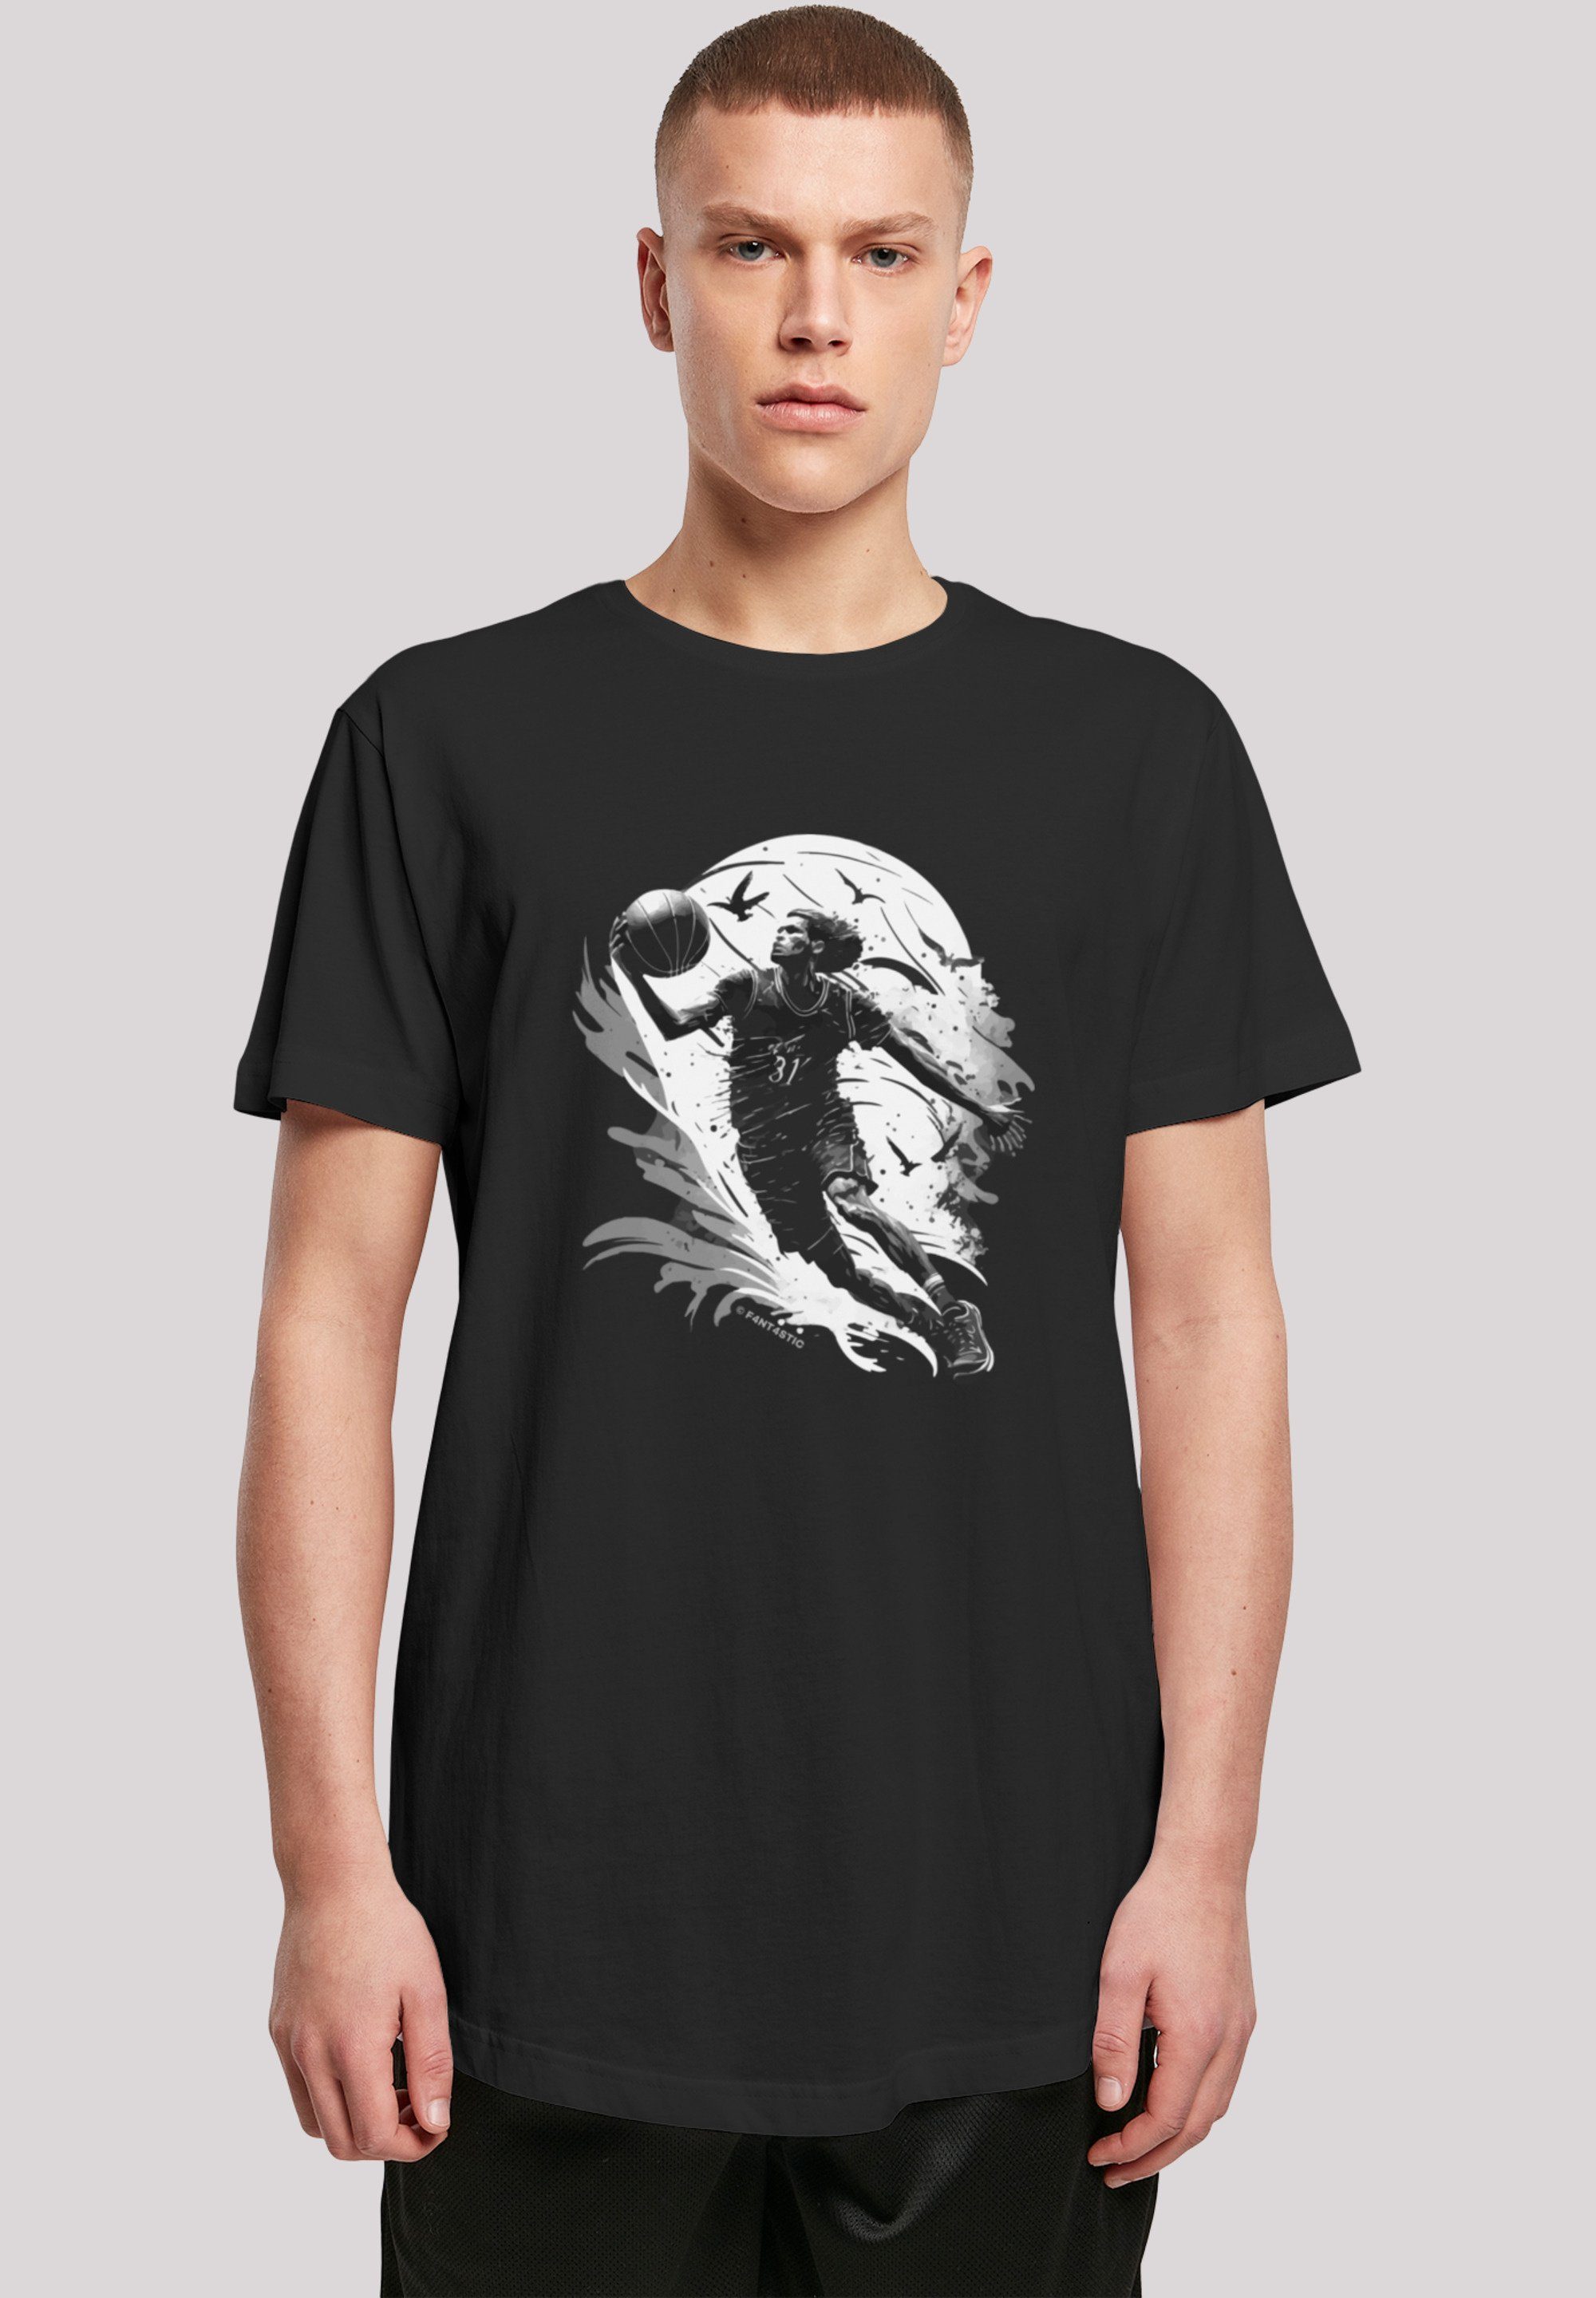 F4NT4STIC T-Shirt Basketball Spieler Baumwollstoff Sehr hohem Tragekomfort weicher Print, mit